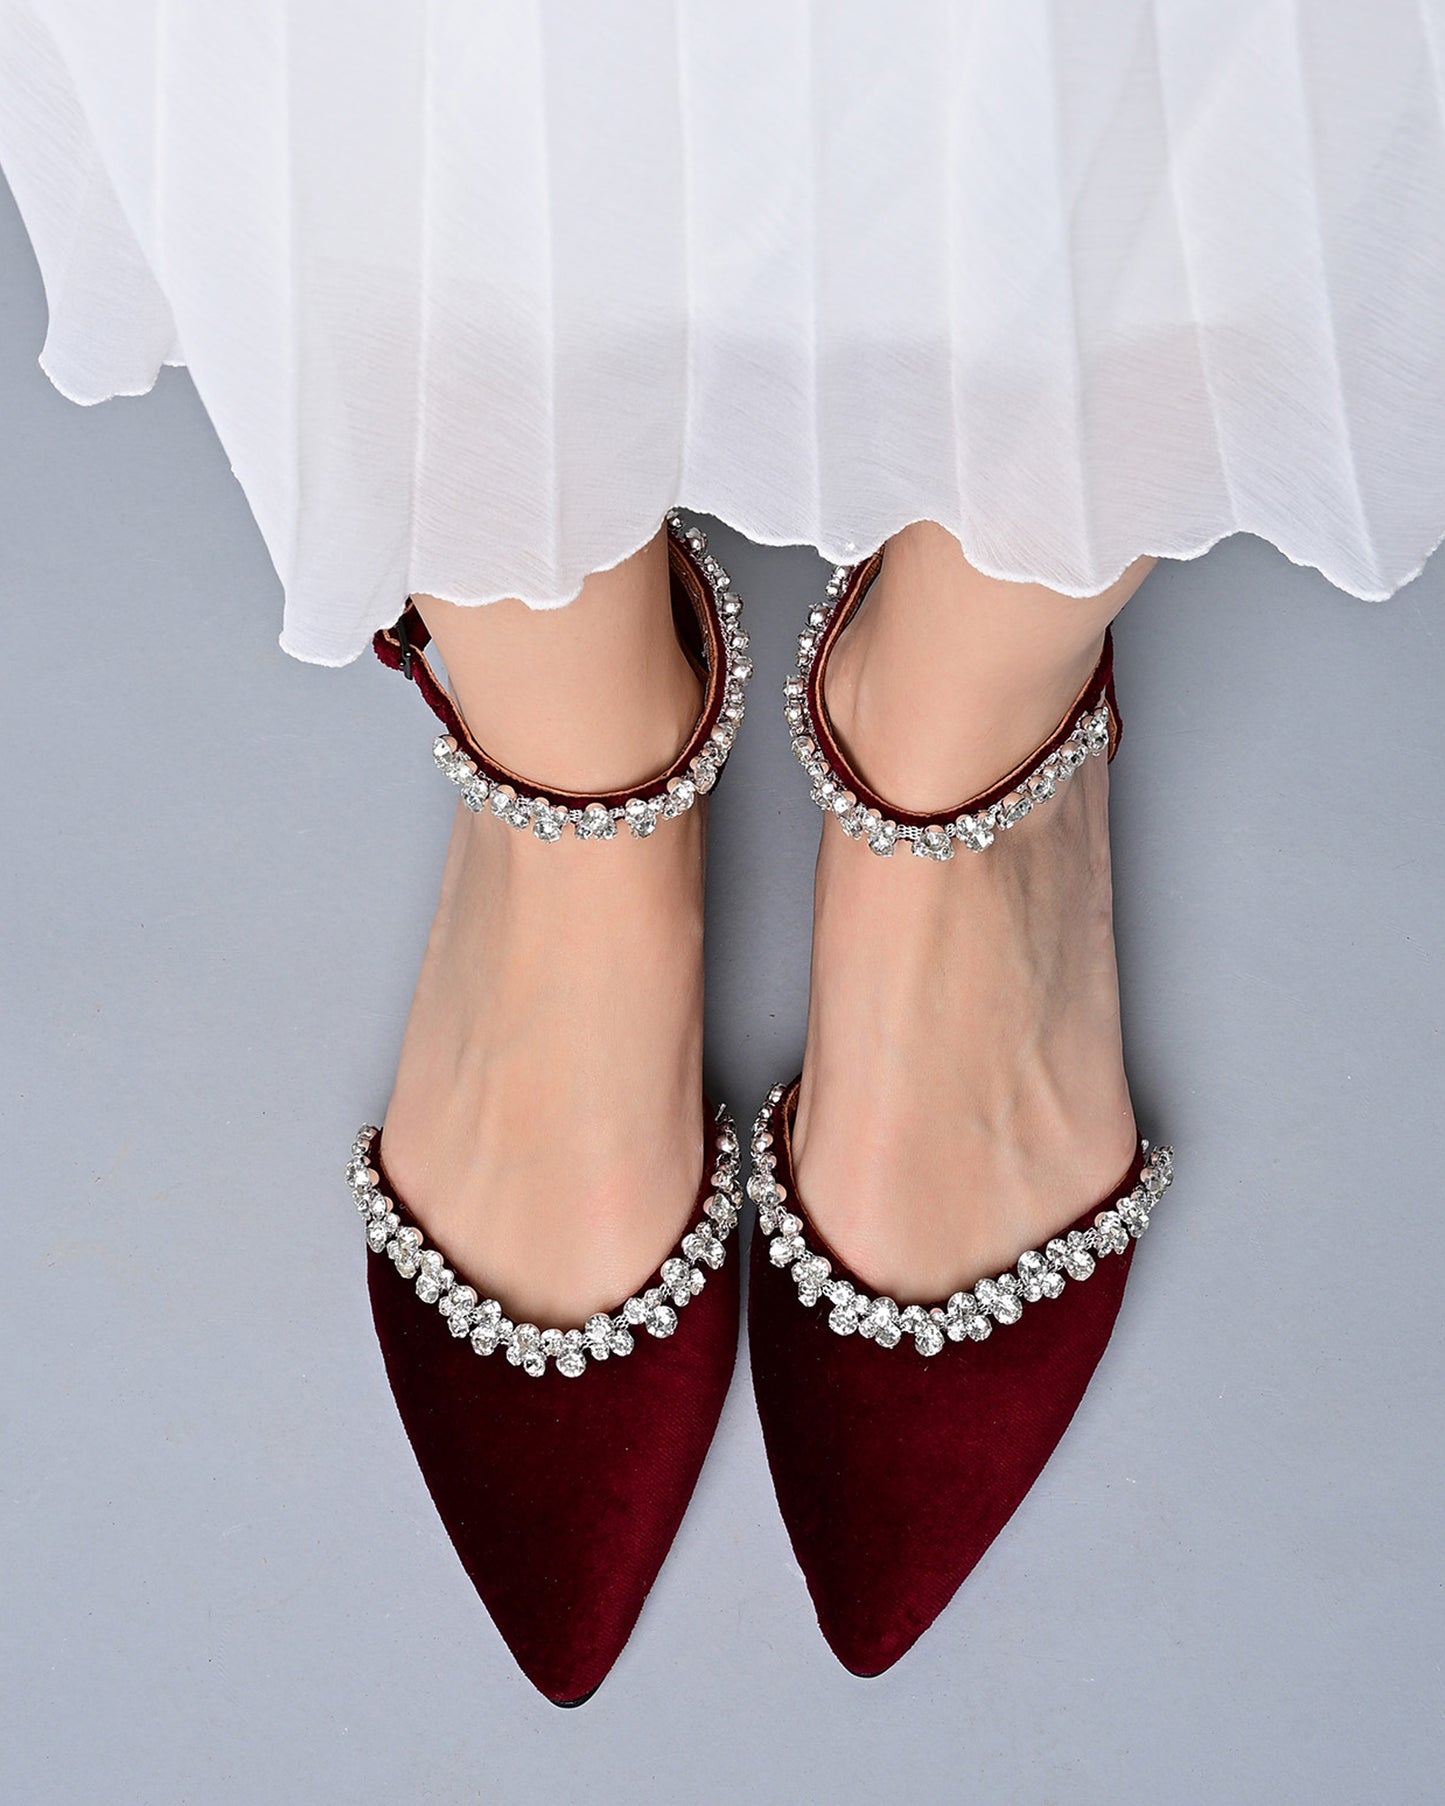 velvet shoes for wedding